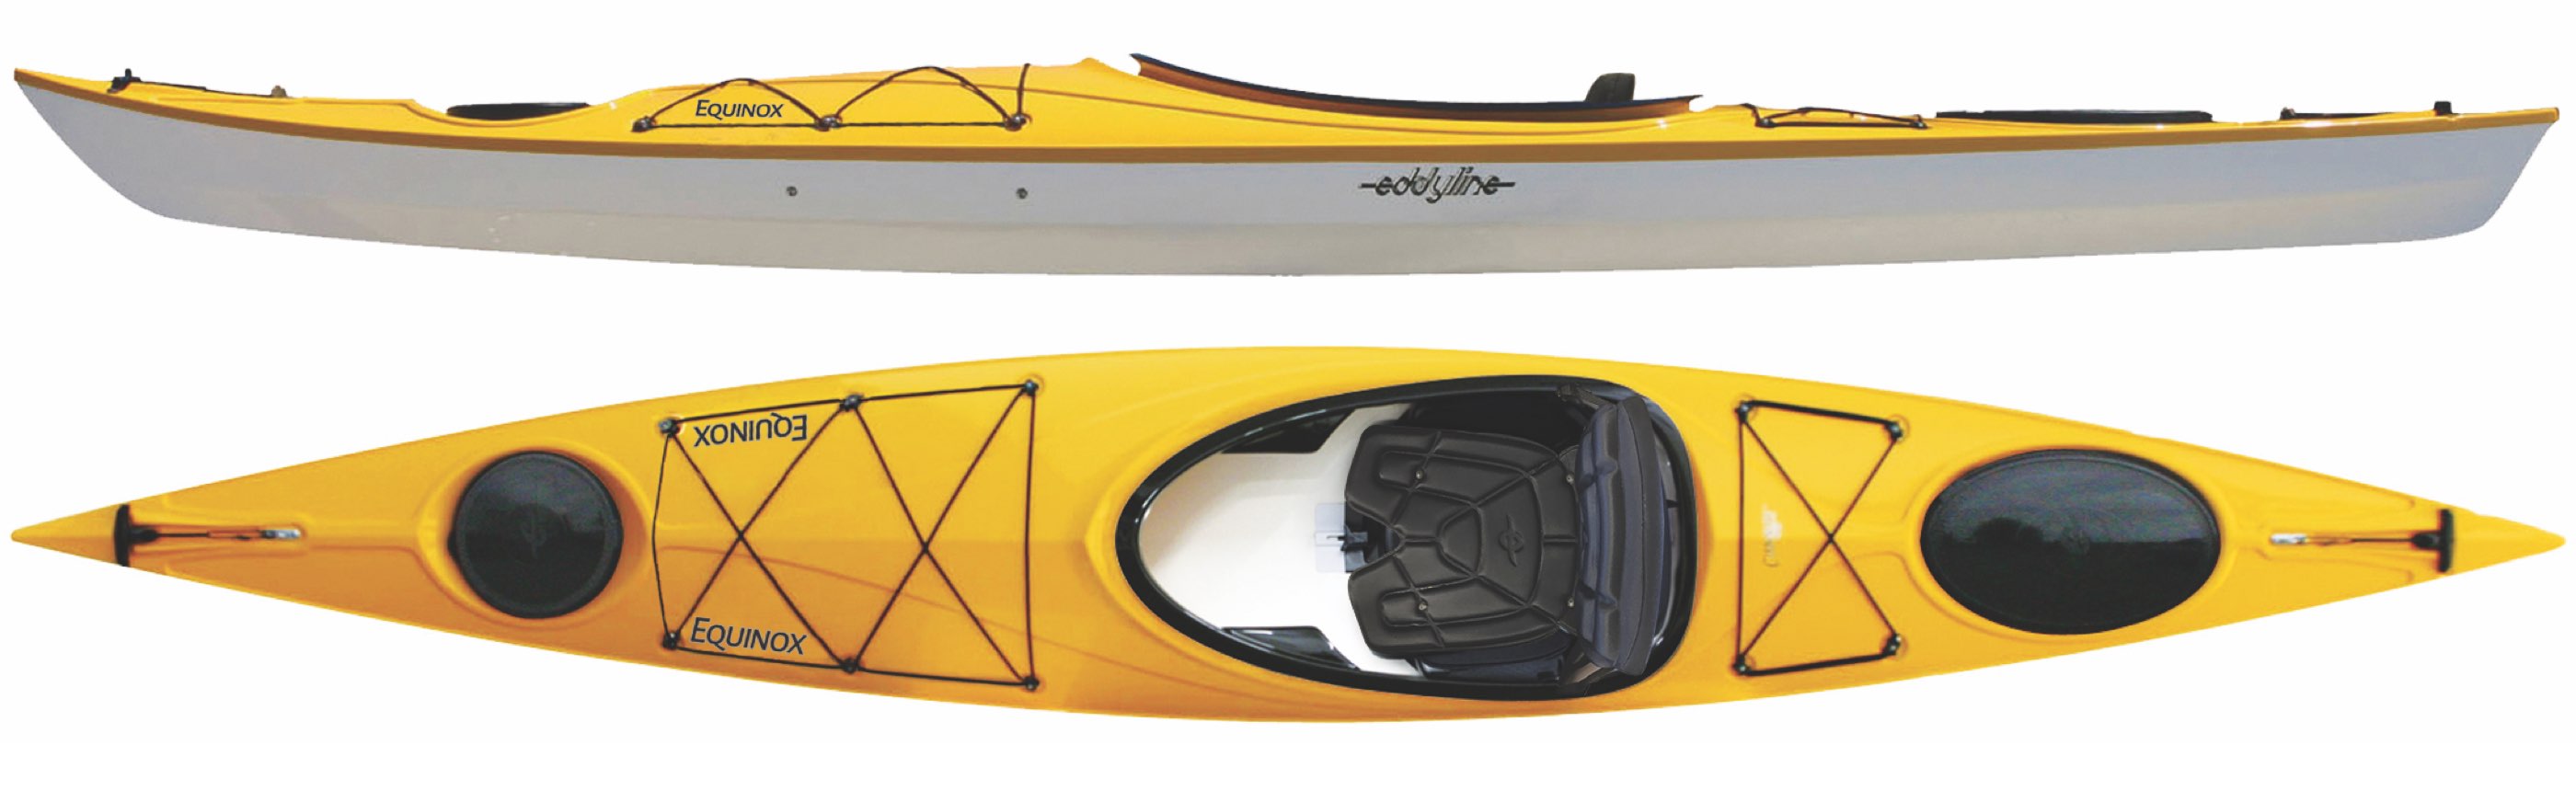 Kayaks: Equinox by Eddyline Kayaks - Image 3383